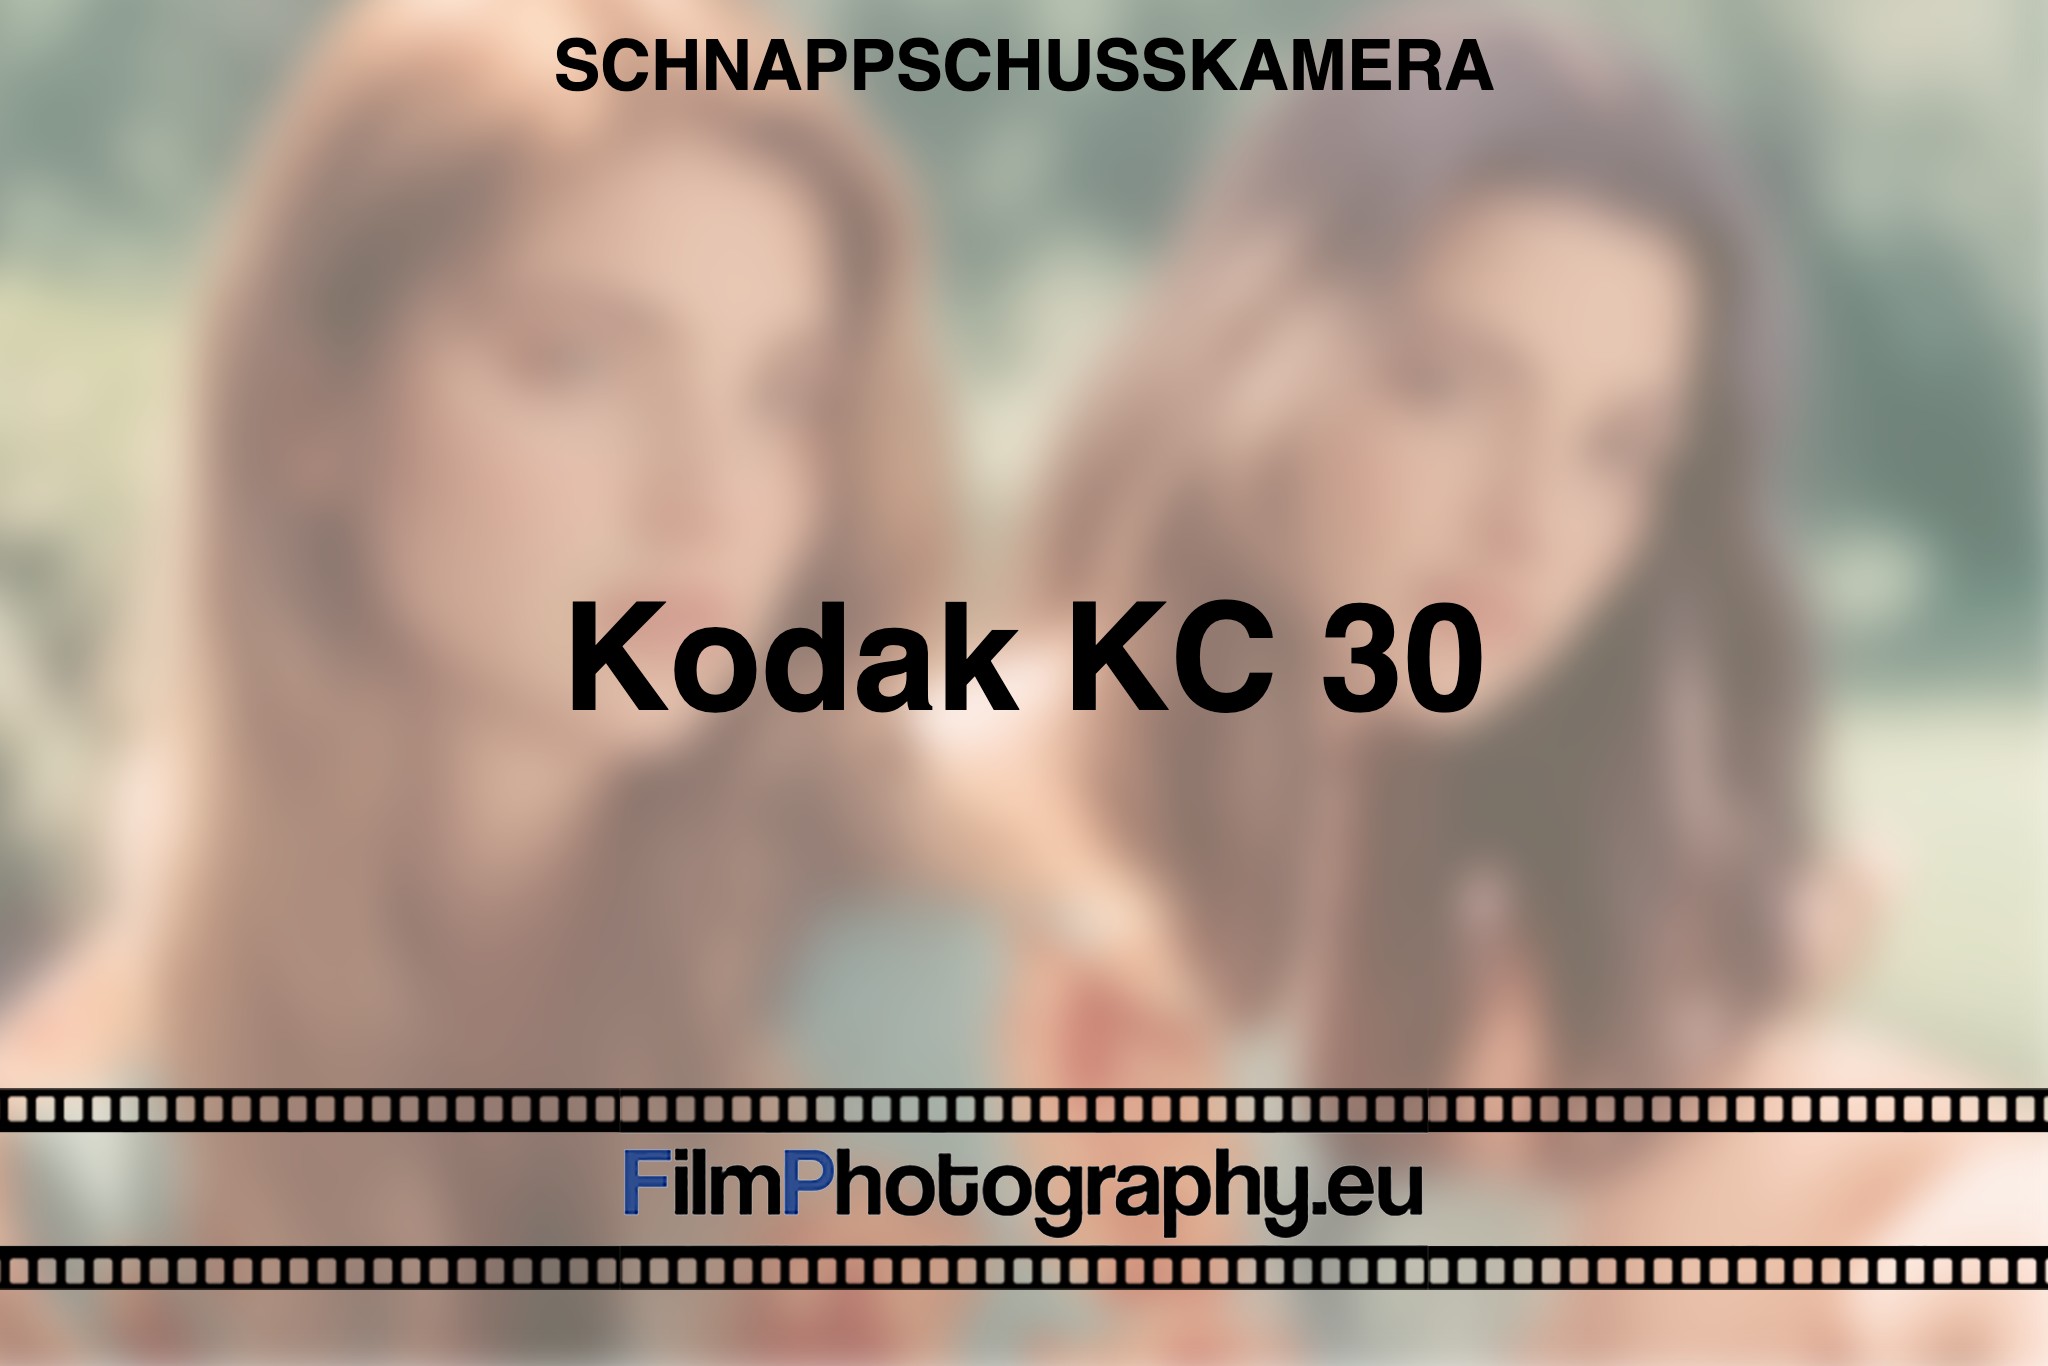 kodak-kc-30-schnappschusskamera-bnv